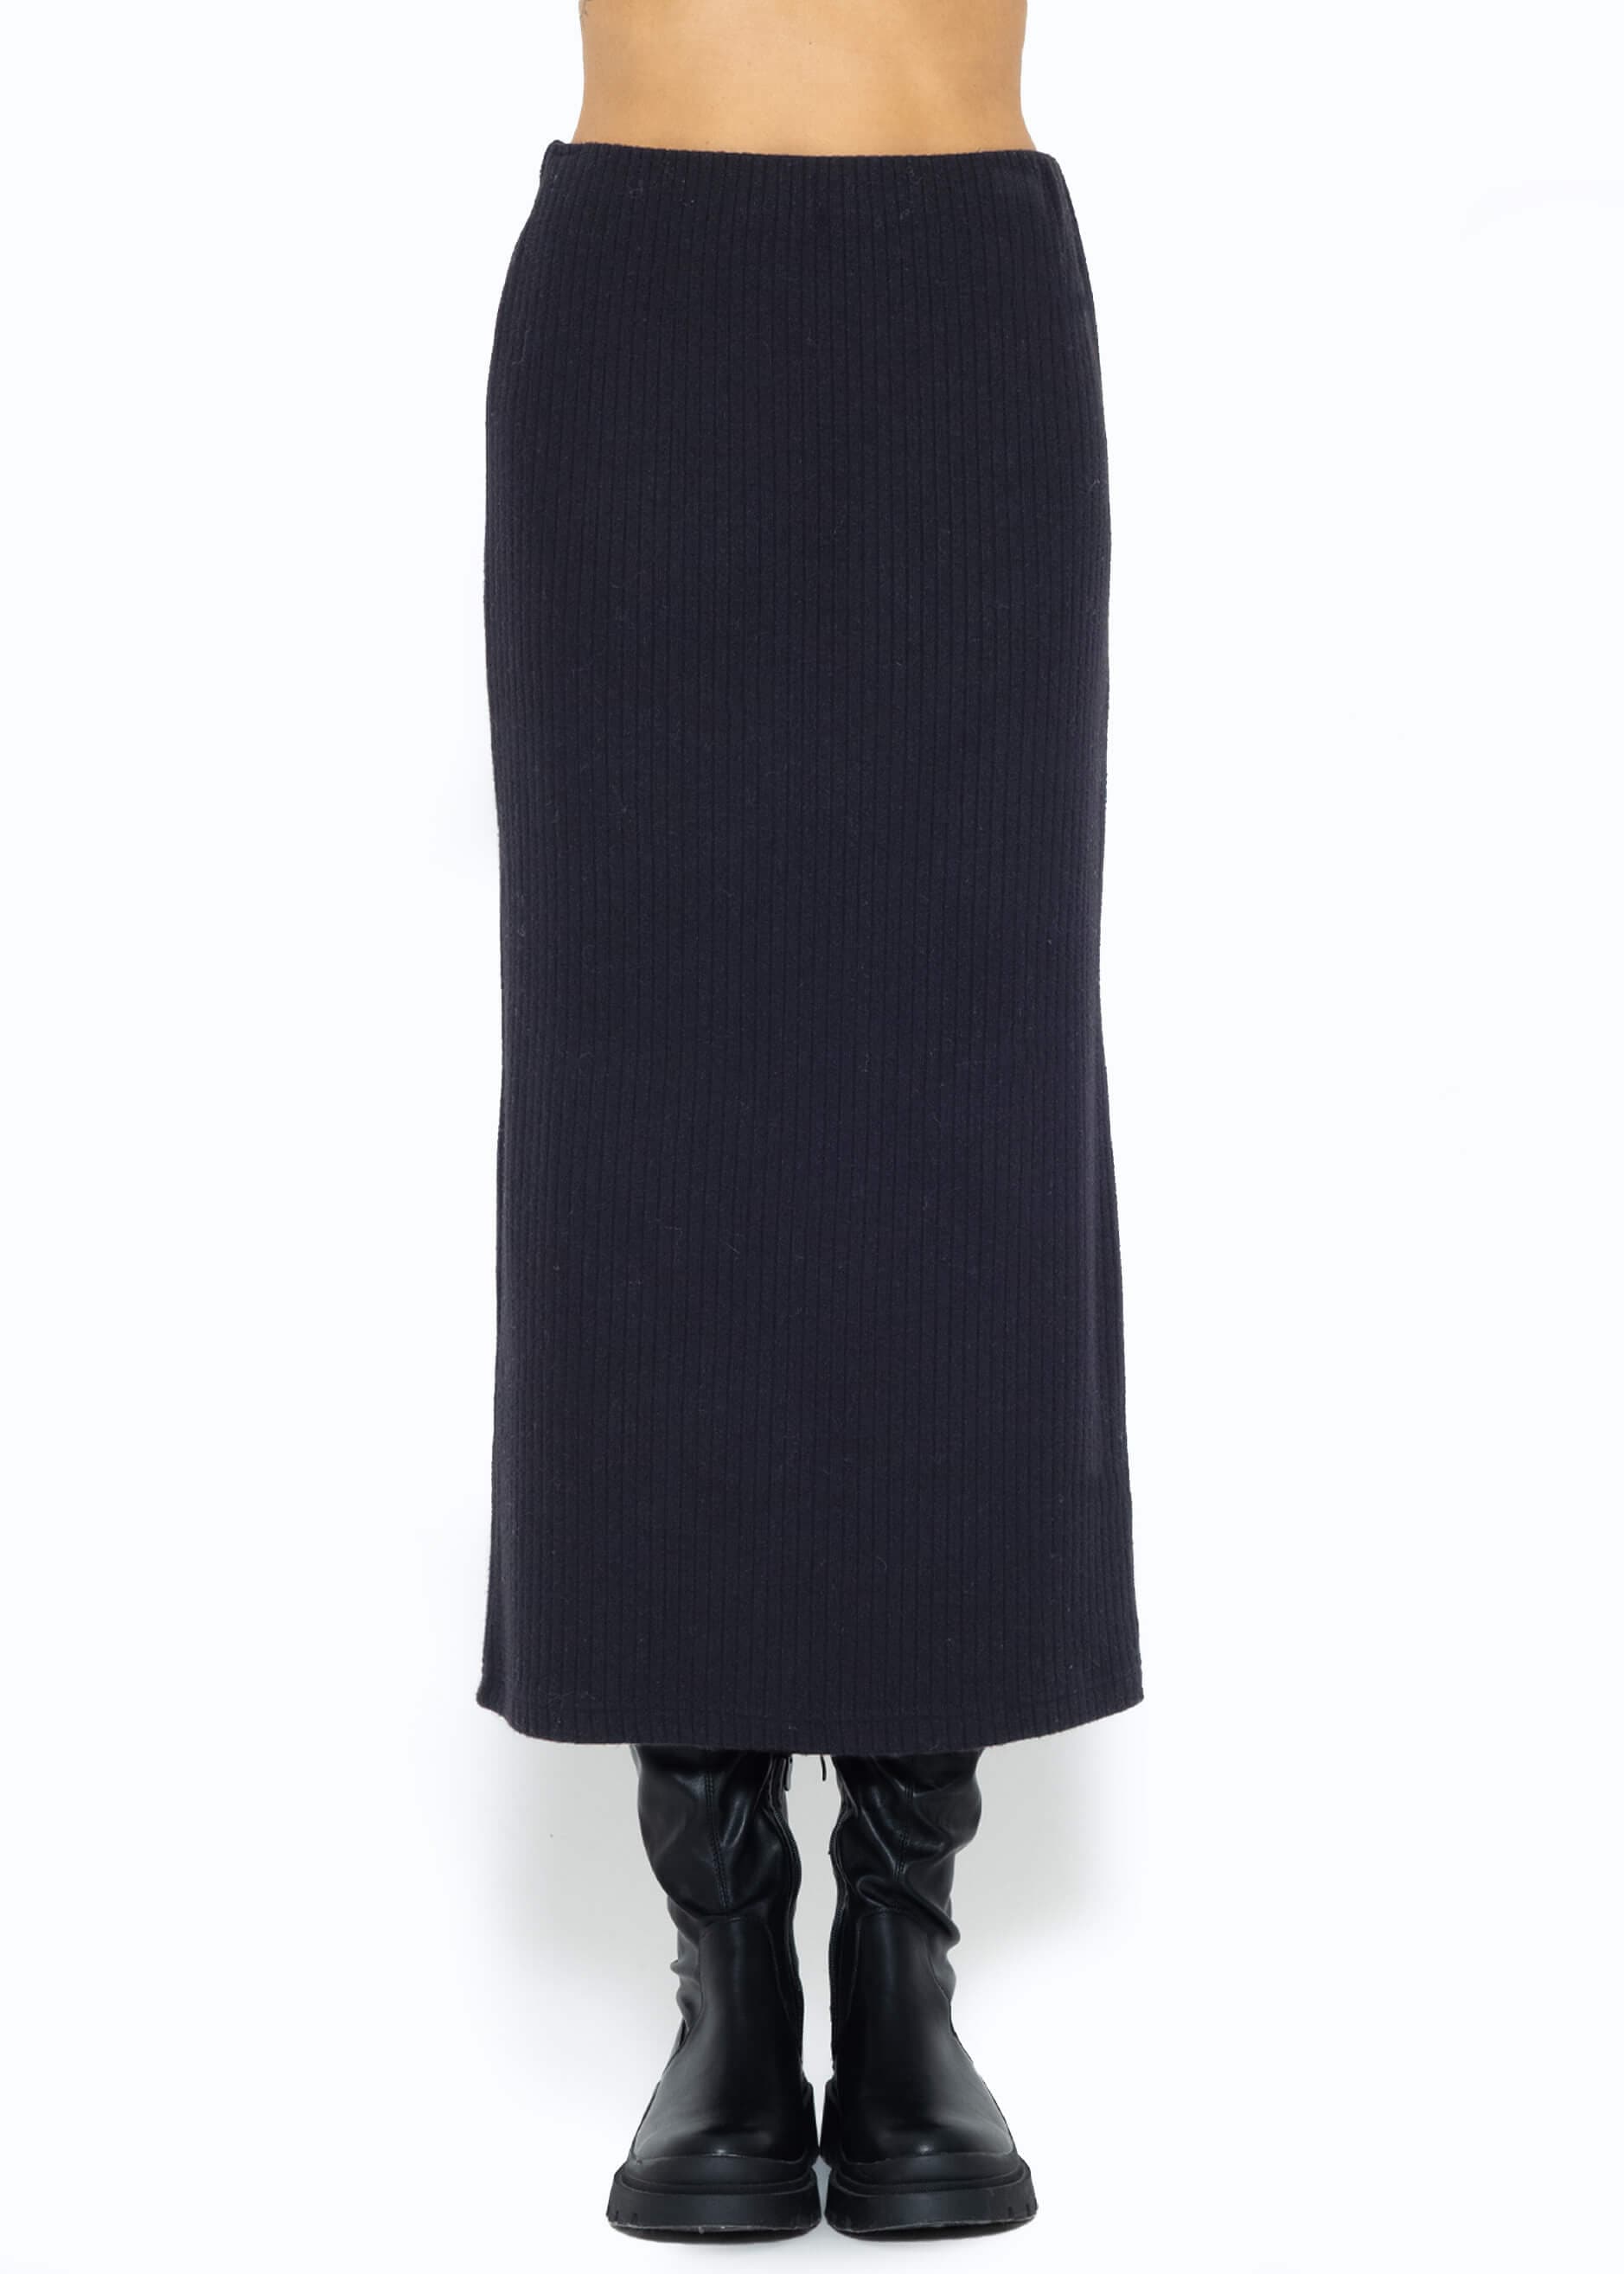 Длинная юбка SASSYCLASSY Maxi (Röcke), черный